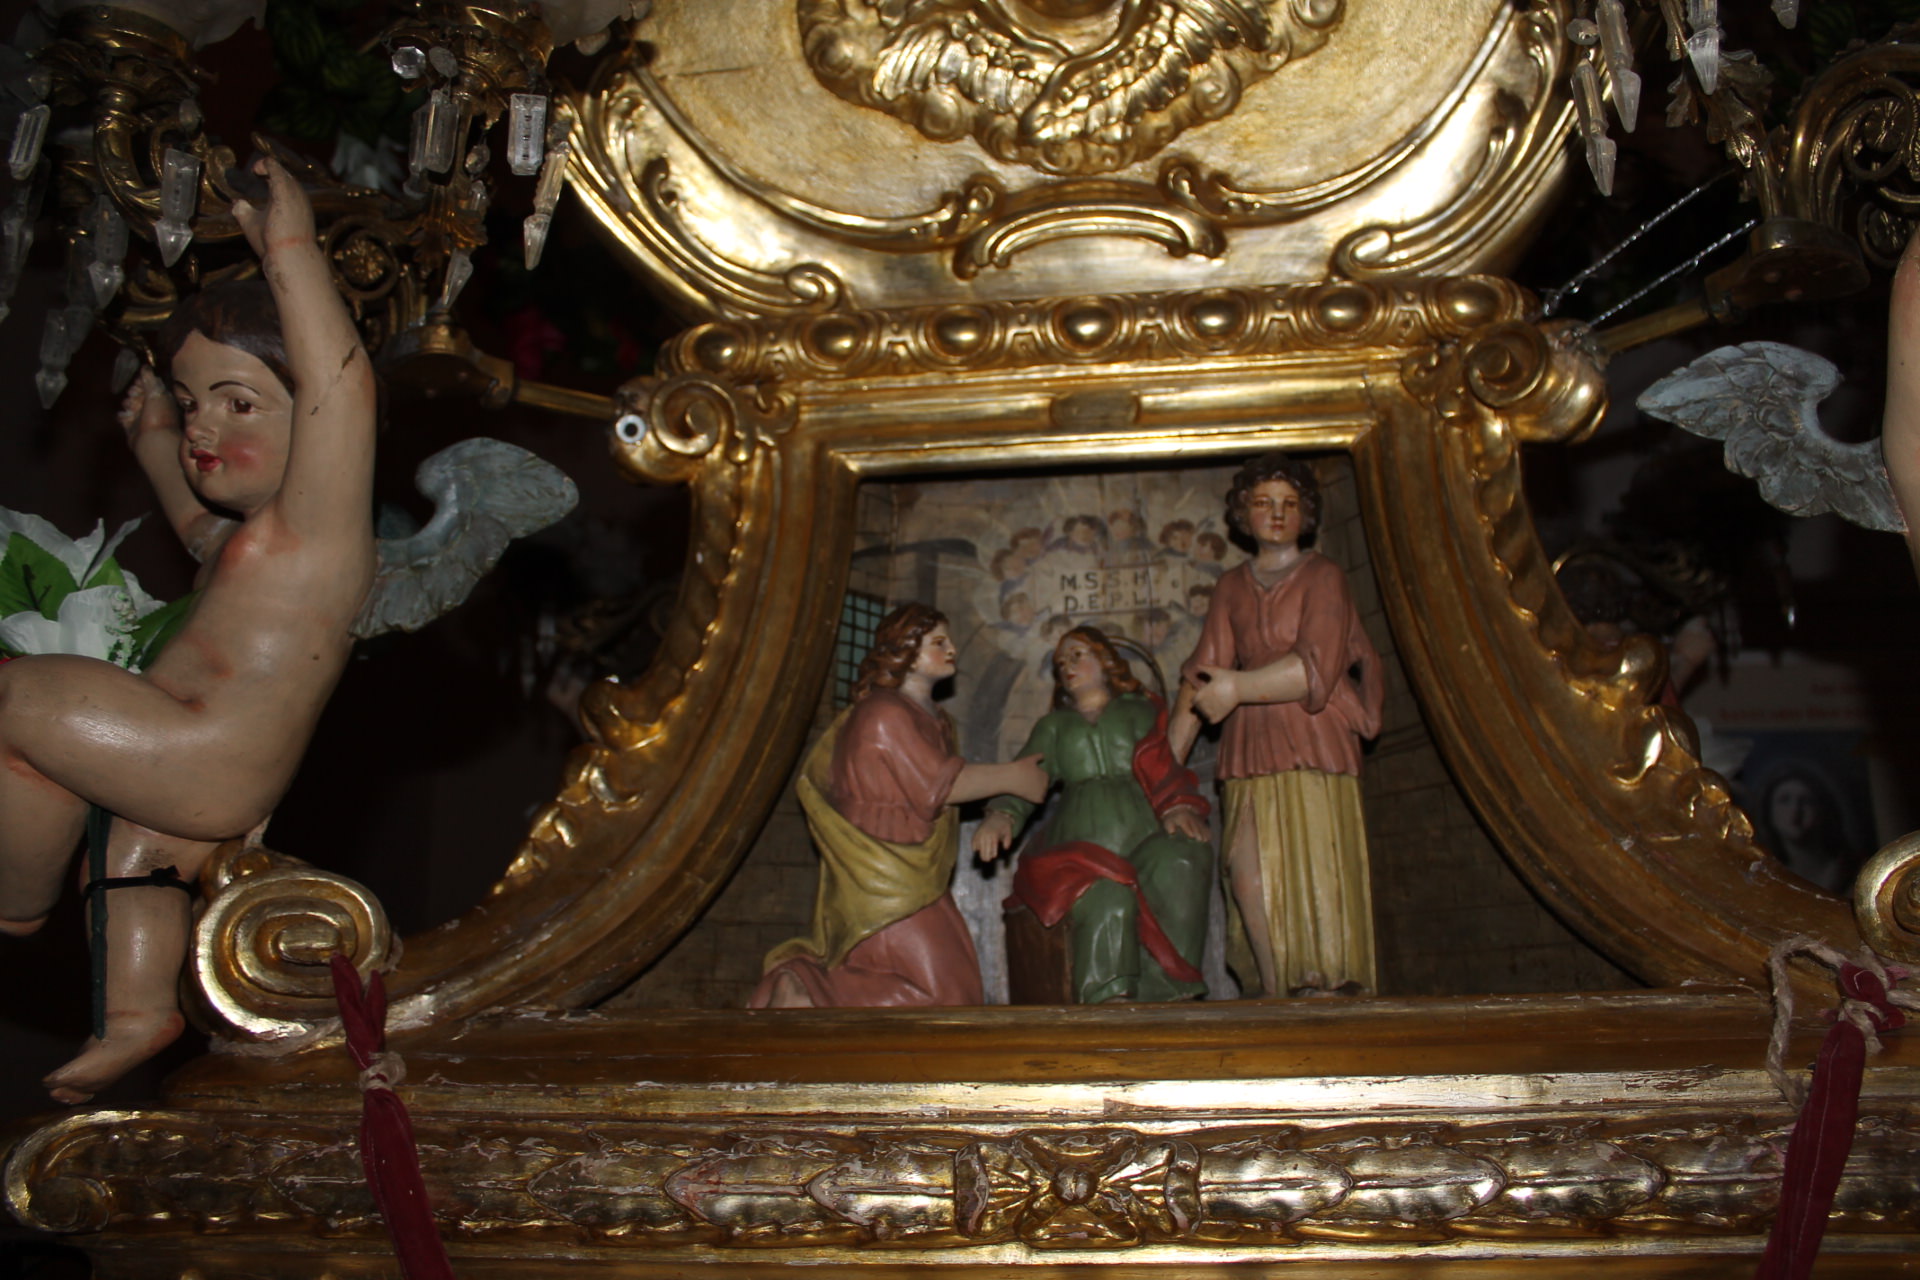 Verso Sant’Agata: la candelora dei pizzicagnoli, in stile rococò